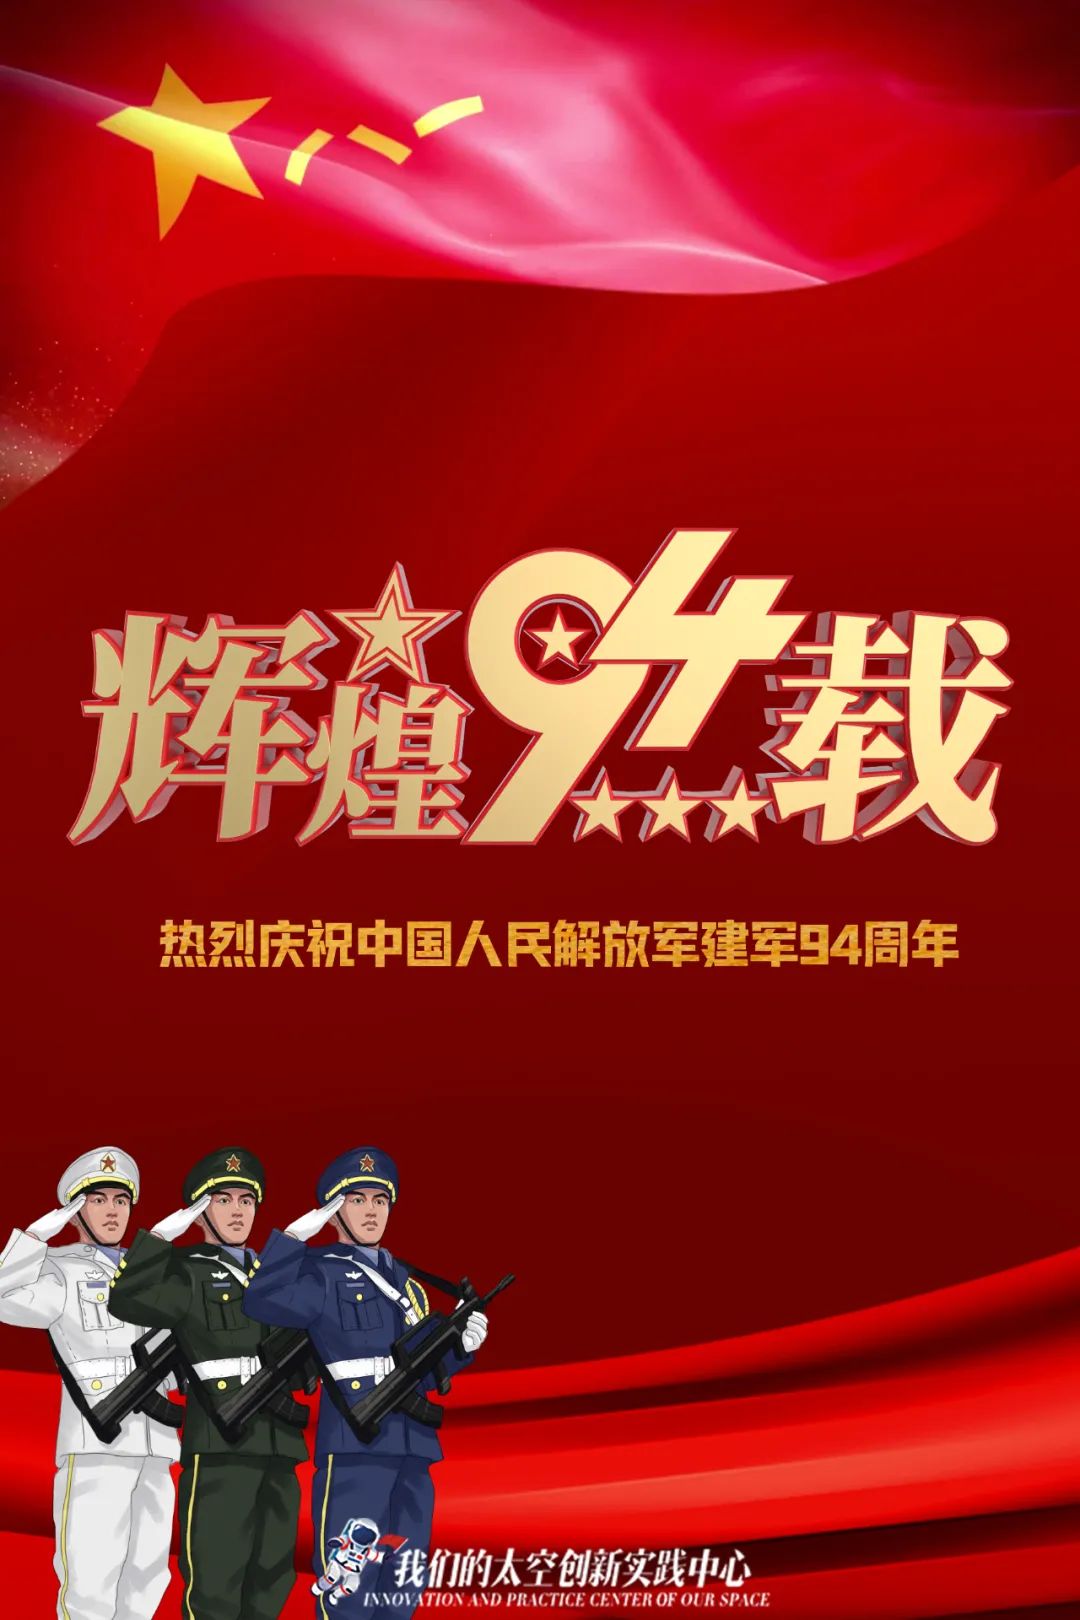 我们的太空 今天是中国人民解放军建军94周年 一路走来 从筚路蓝缕到